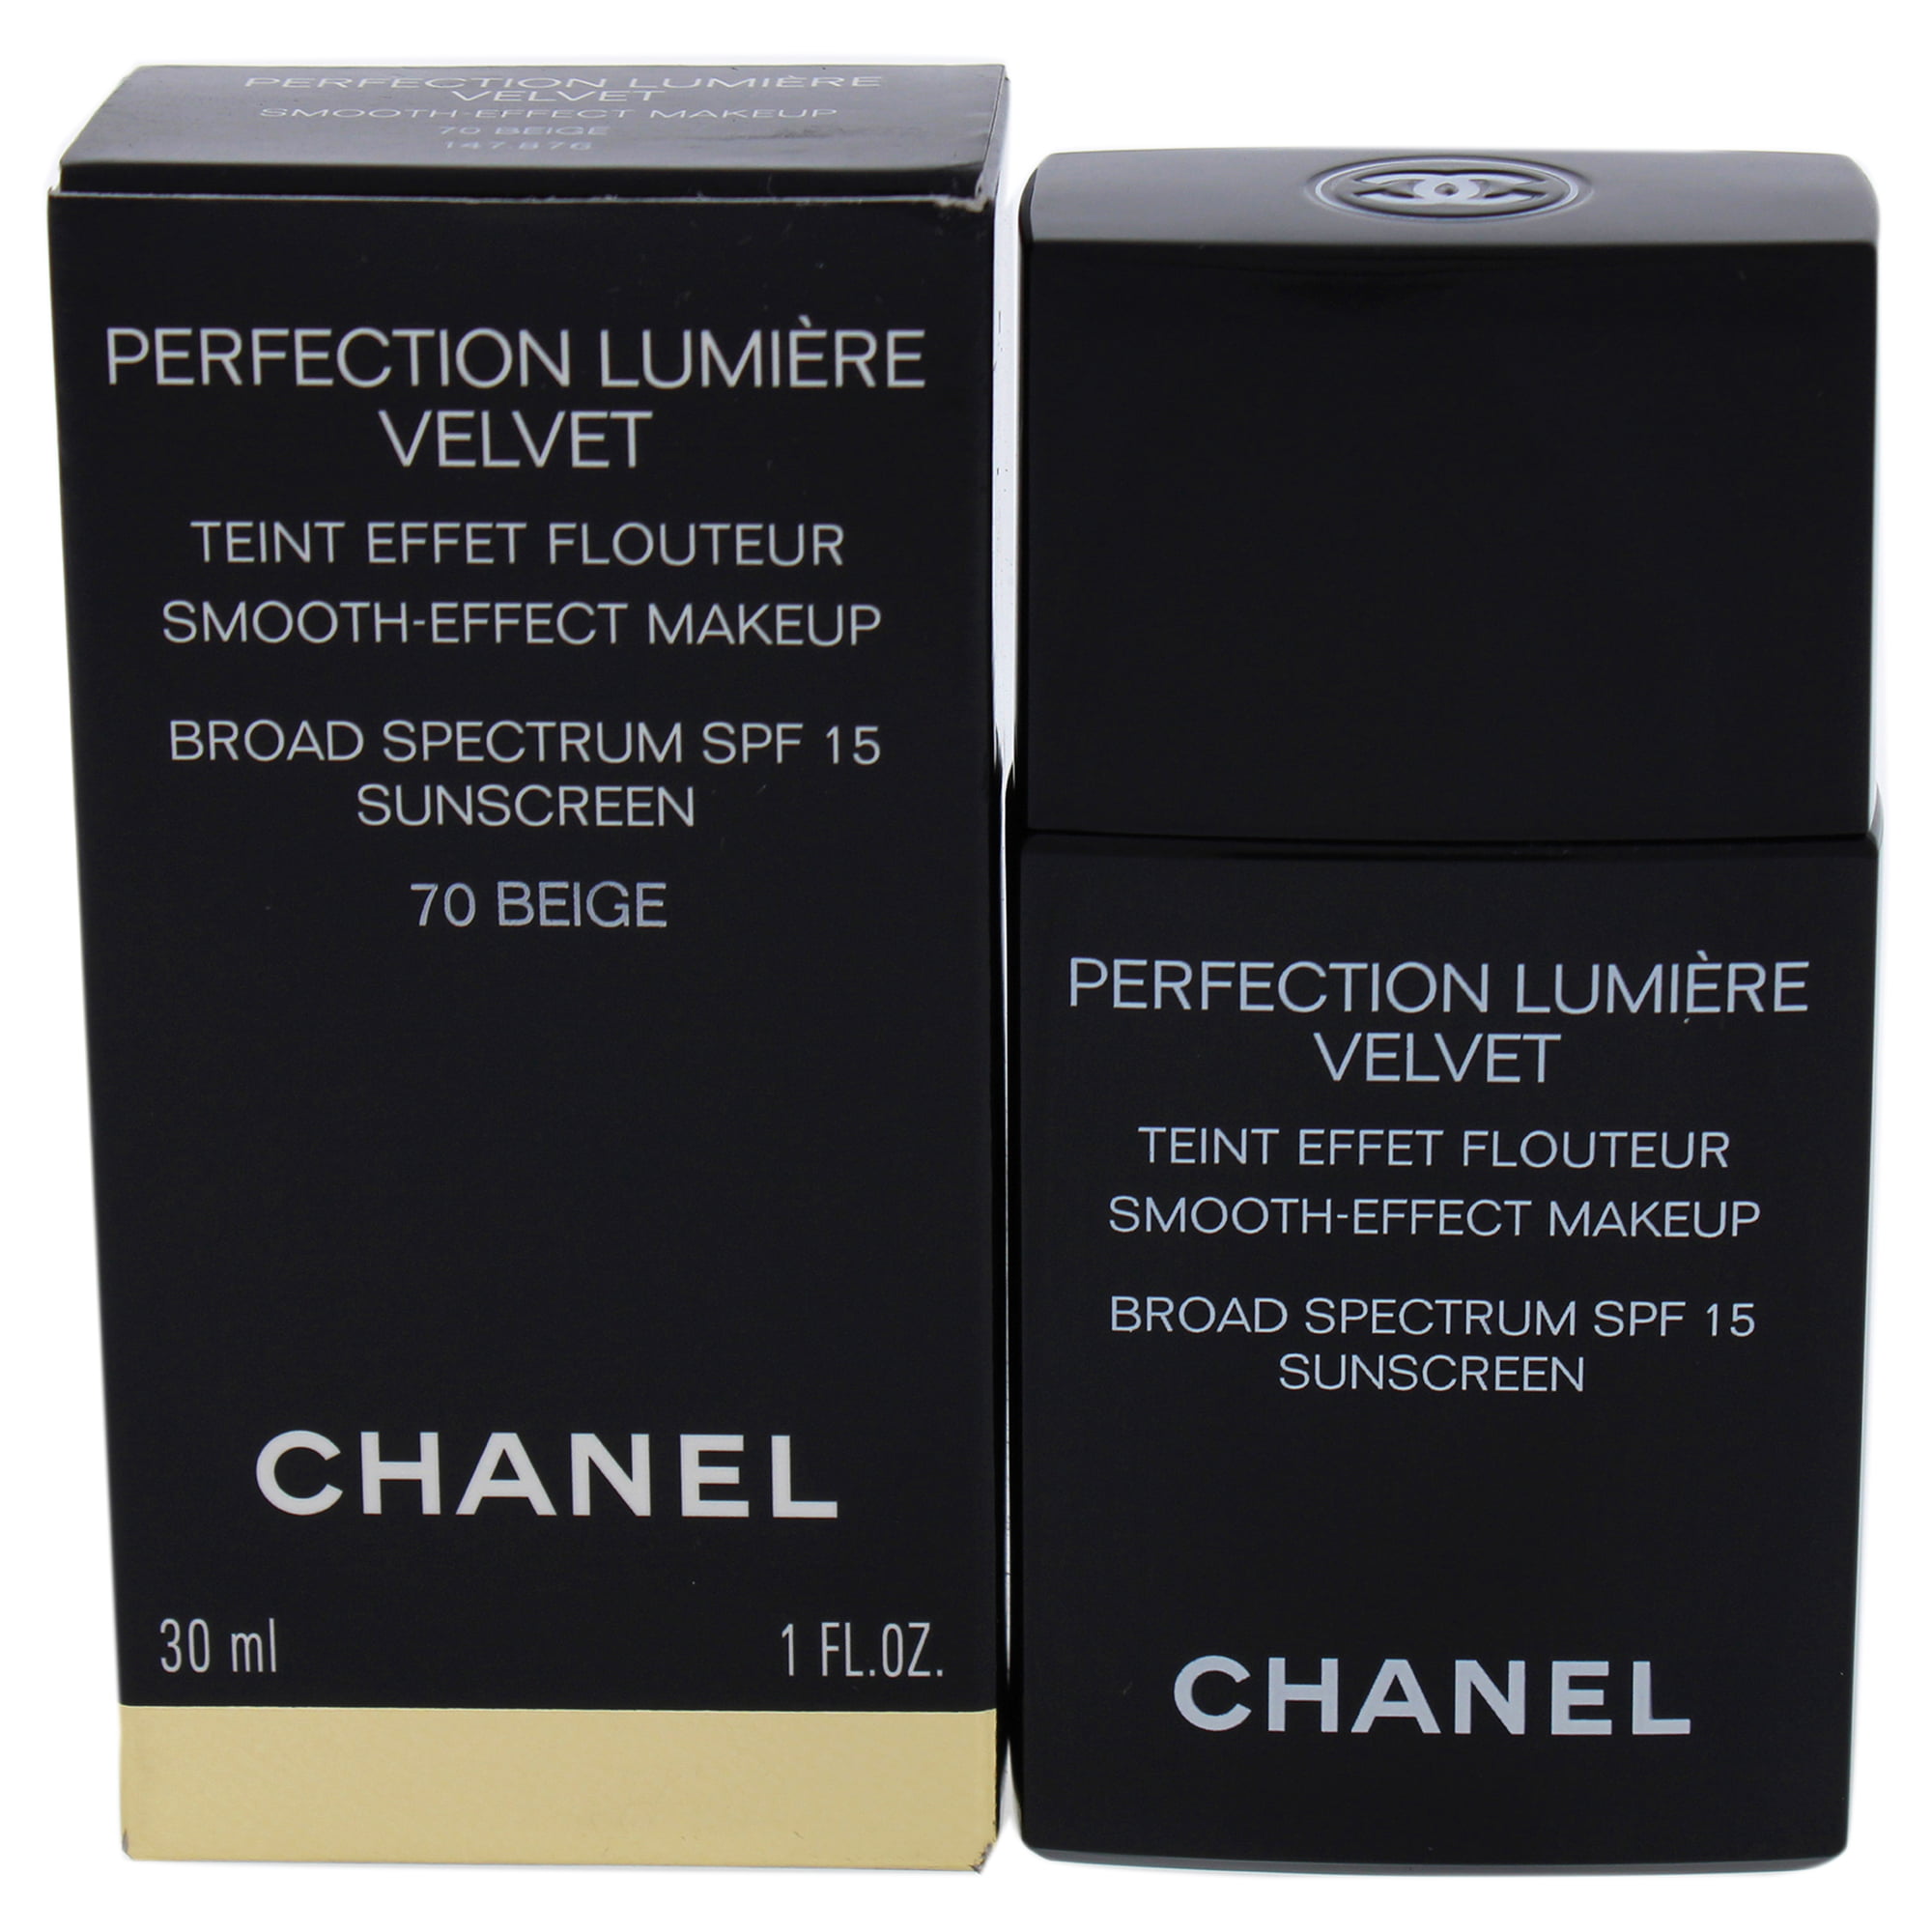 Chanel Perfection Lumière Velvet Foundation Review